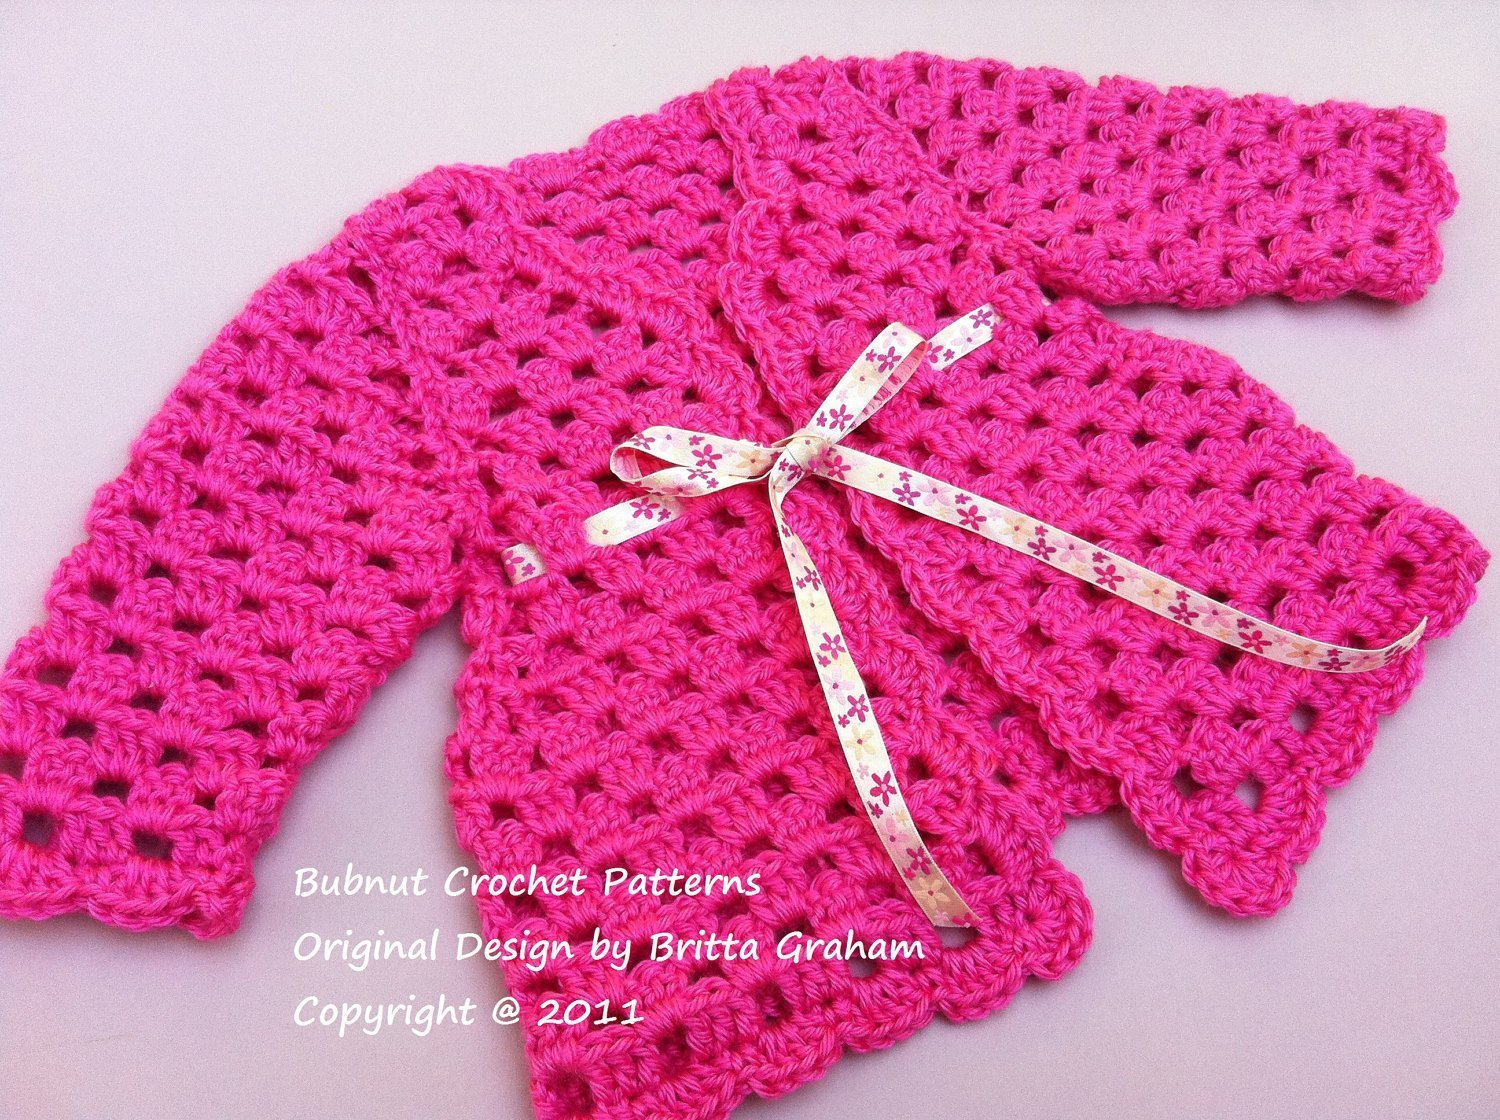 Crochet Baby Sweater Patterns Easy Crochet Ba Sweater Pattern My Knitting Beginner Blanket